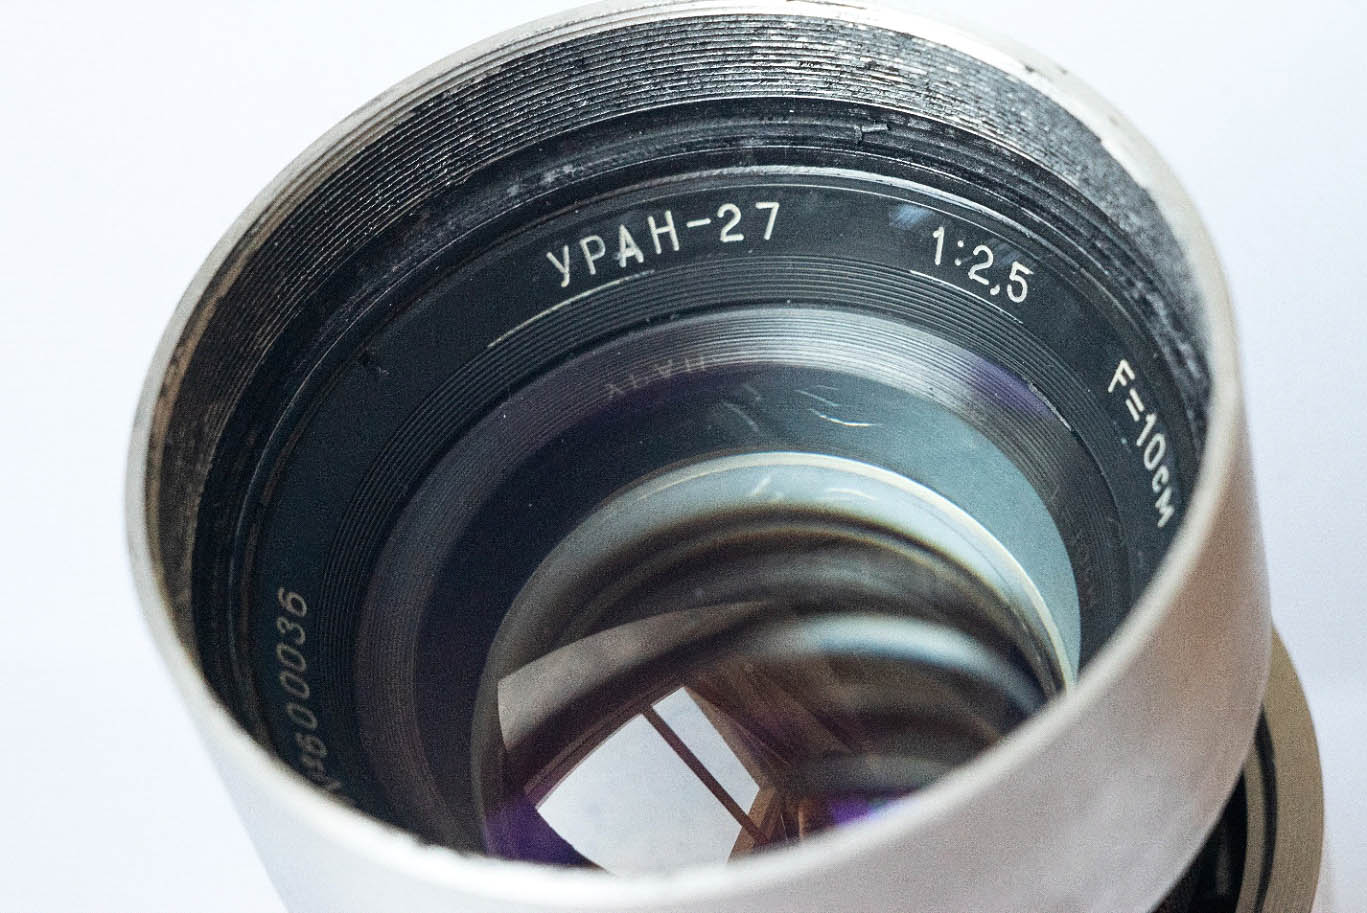 Aangepaste lens Uran-27.